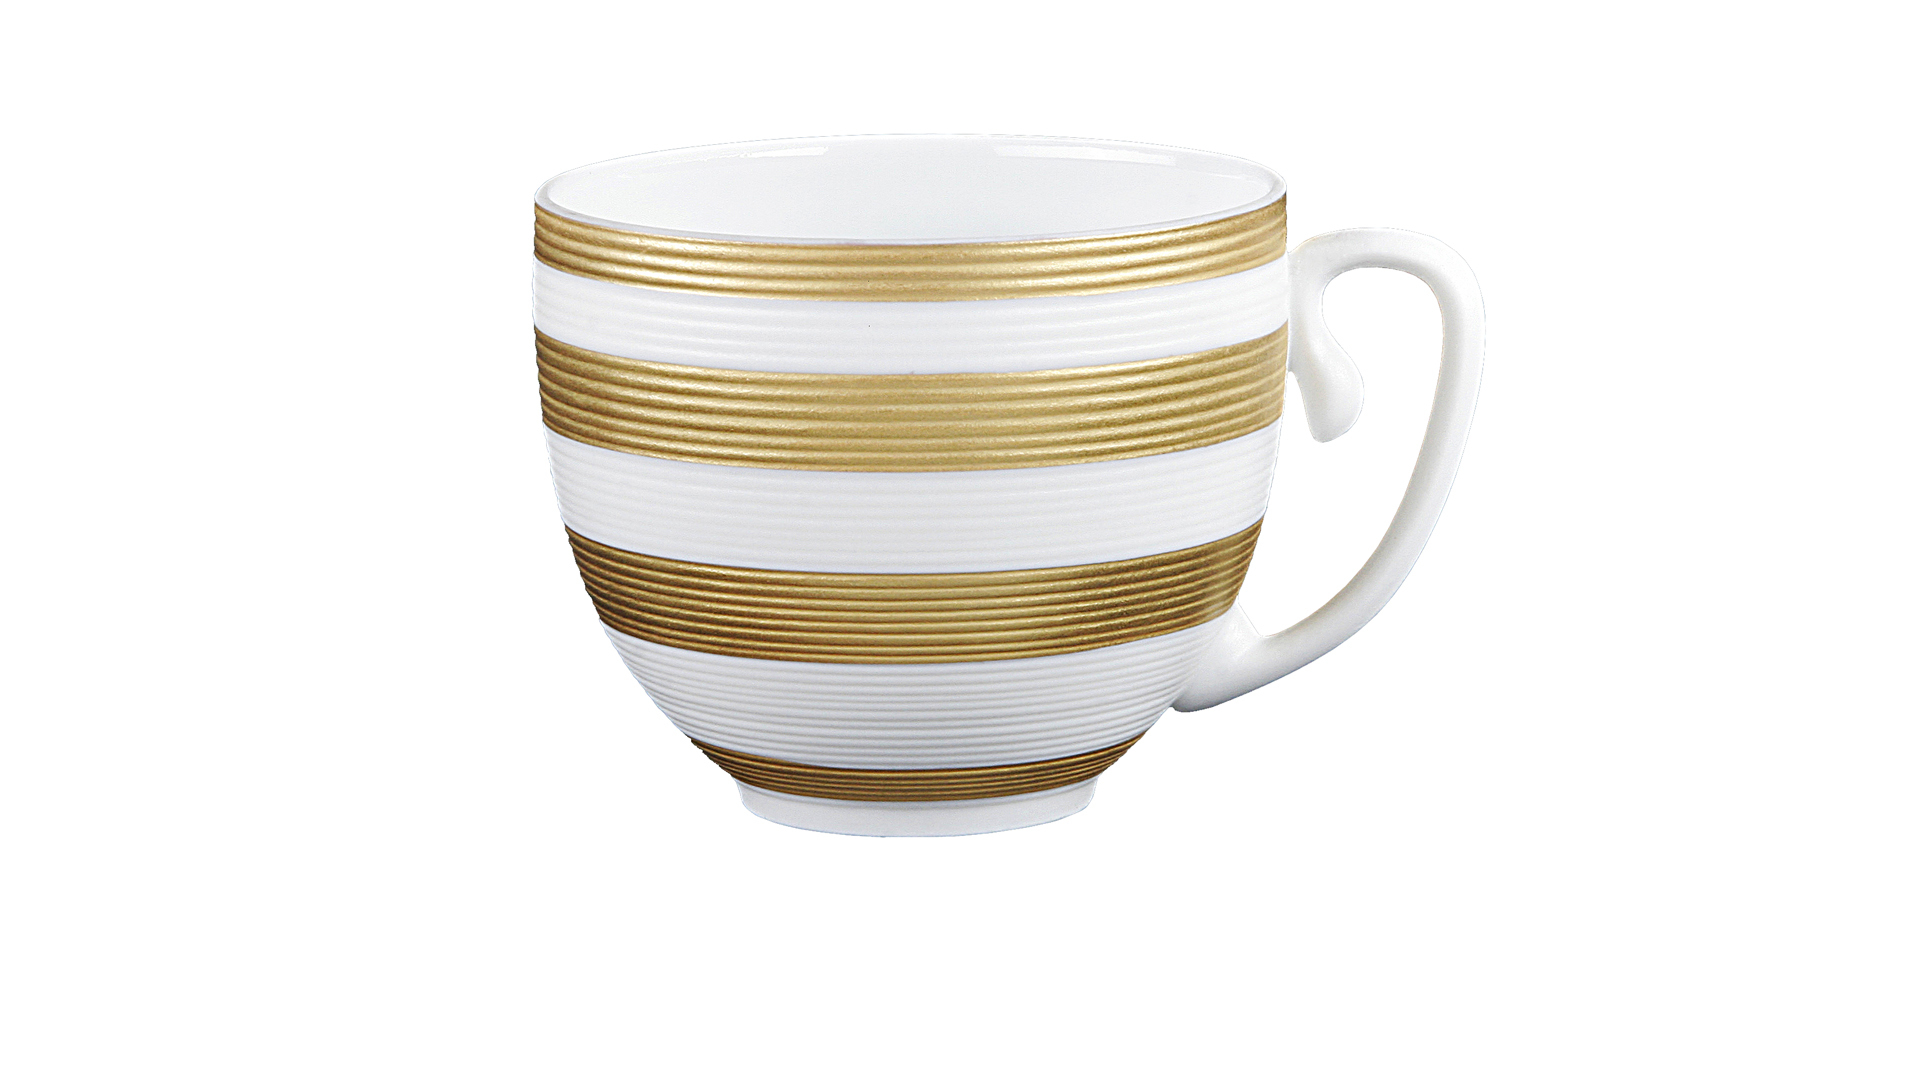 Чашка для мокко JL Coquet Хемисфер Узкие полосы, золотые 70 мл